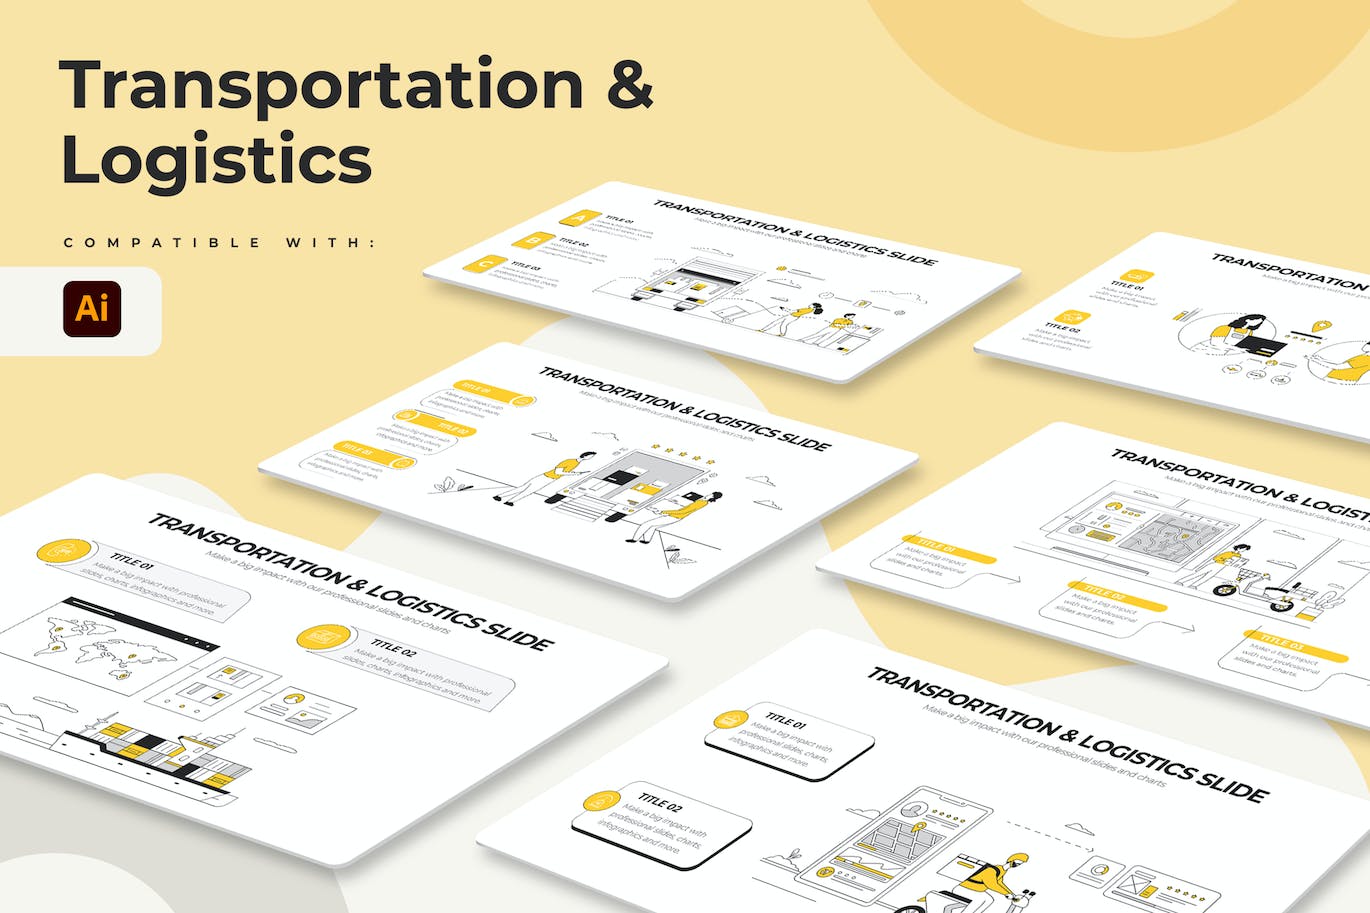 运输物流信息图表矢量模板 Transportation & Logistics Illustrator Infographic 幻灯图表 第1张